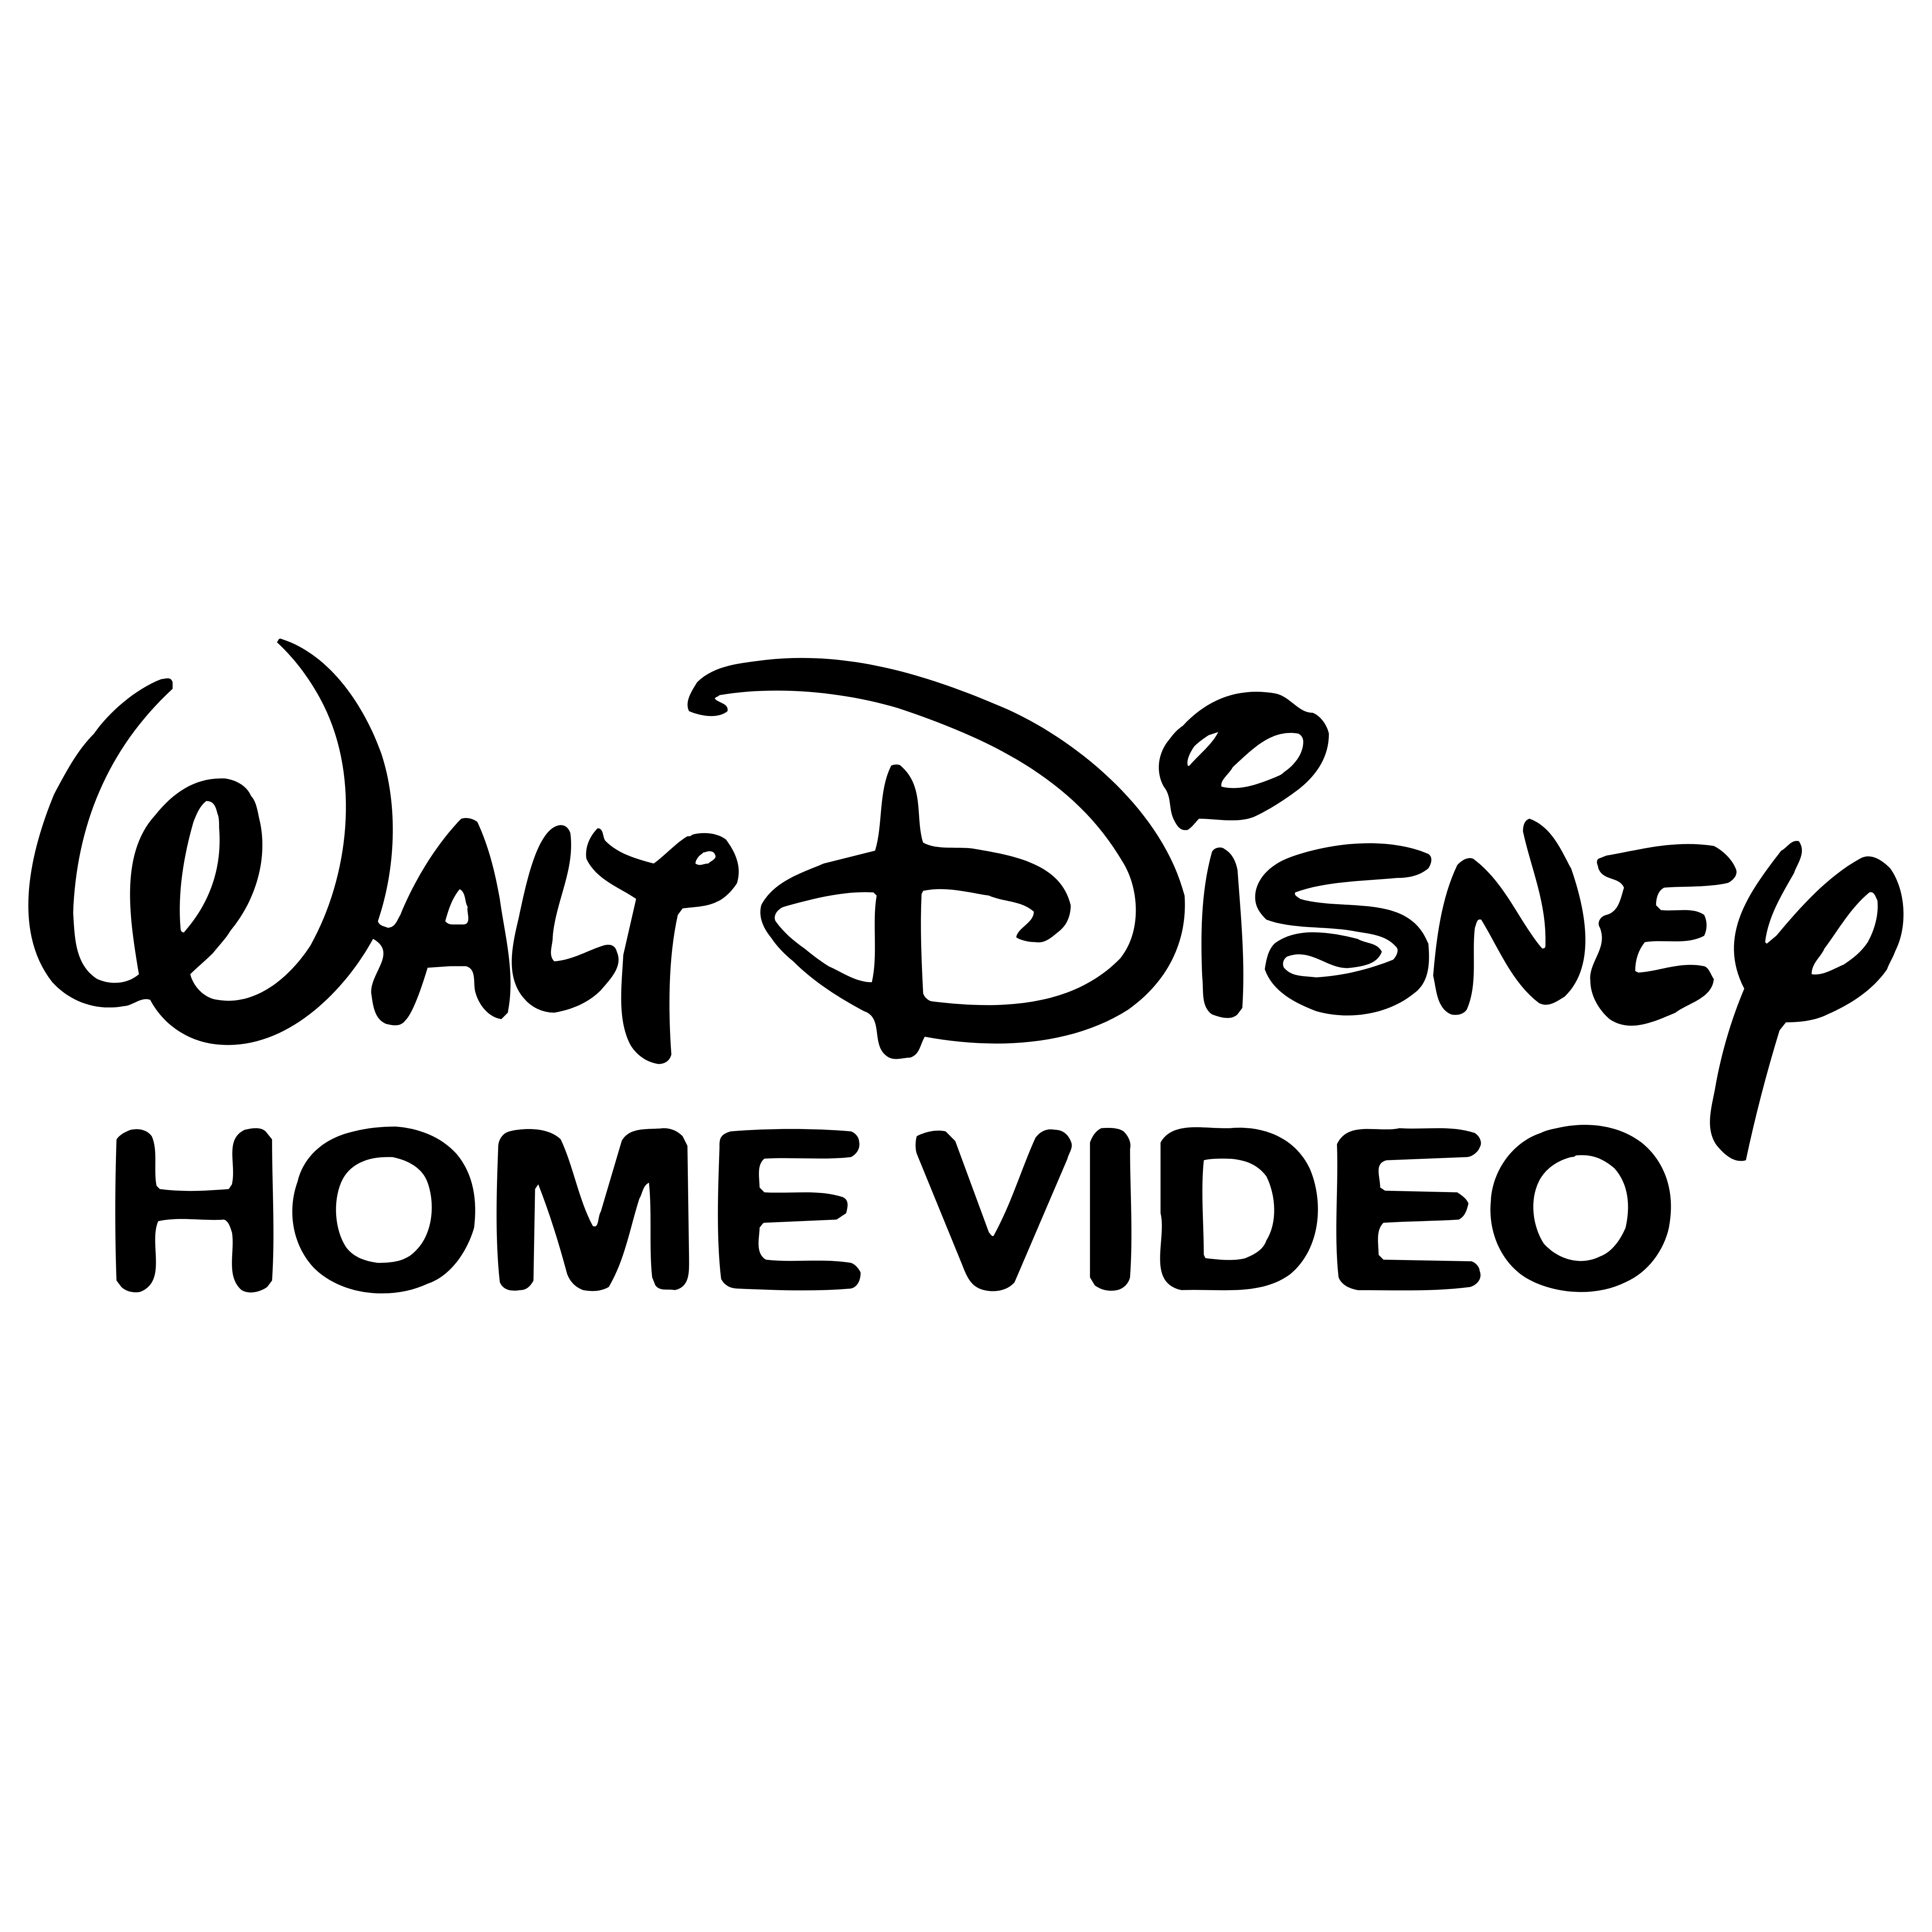 Free Free 213 Walt Disney Pictures Logo Svg SVG PNG EPS DXF File